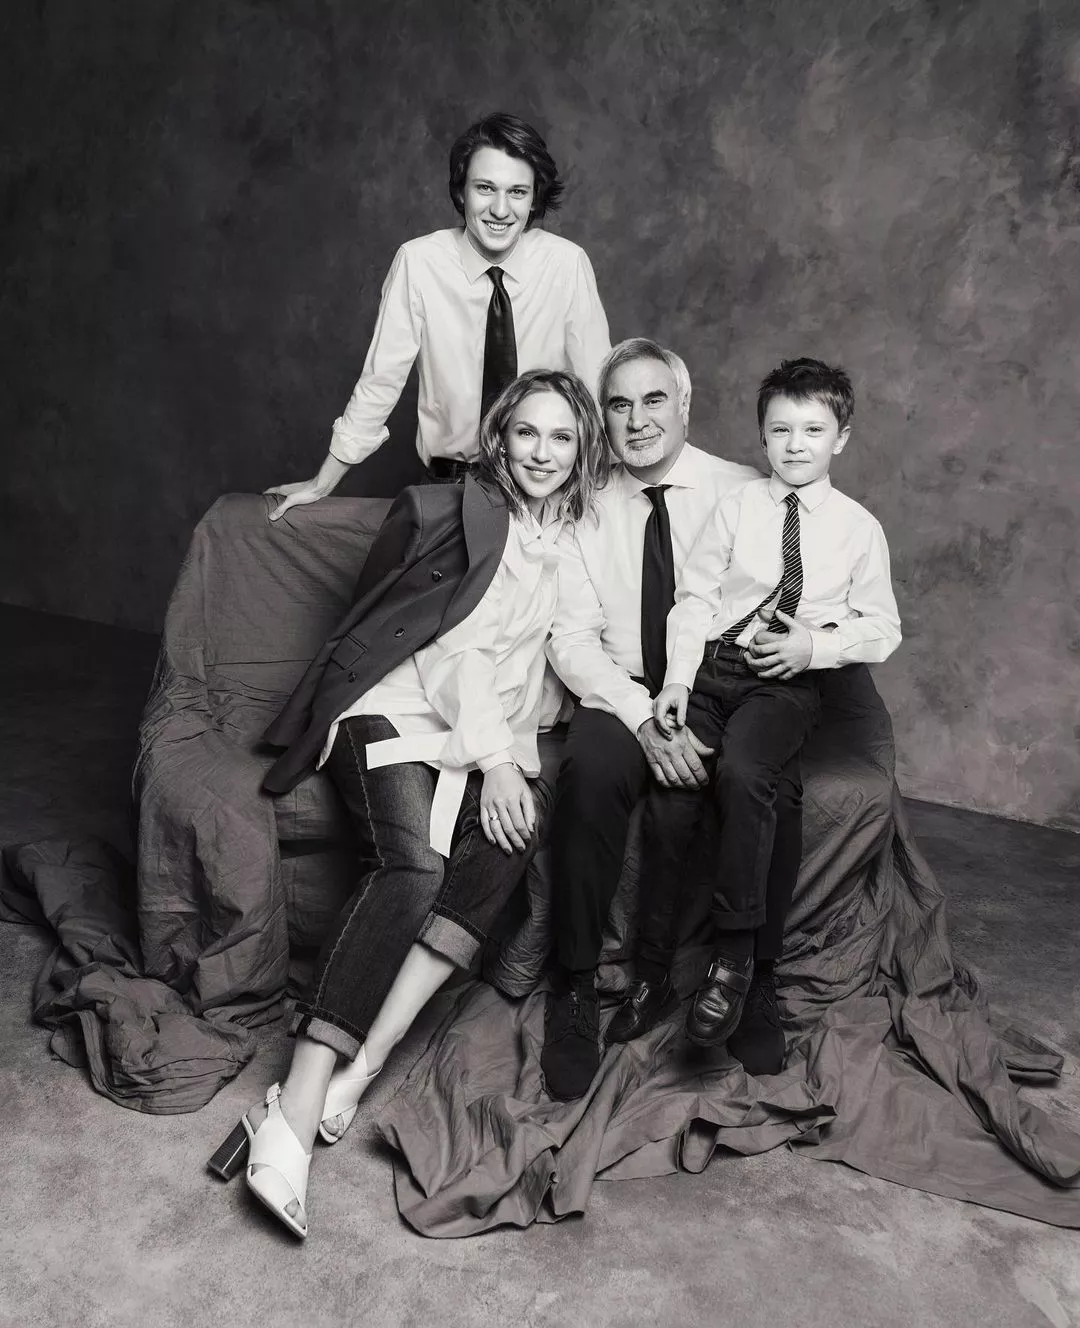 Альбина Джанабаева в честь дня рождения Валерия Меладзе опубликовала редкое семейное фото